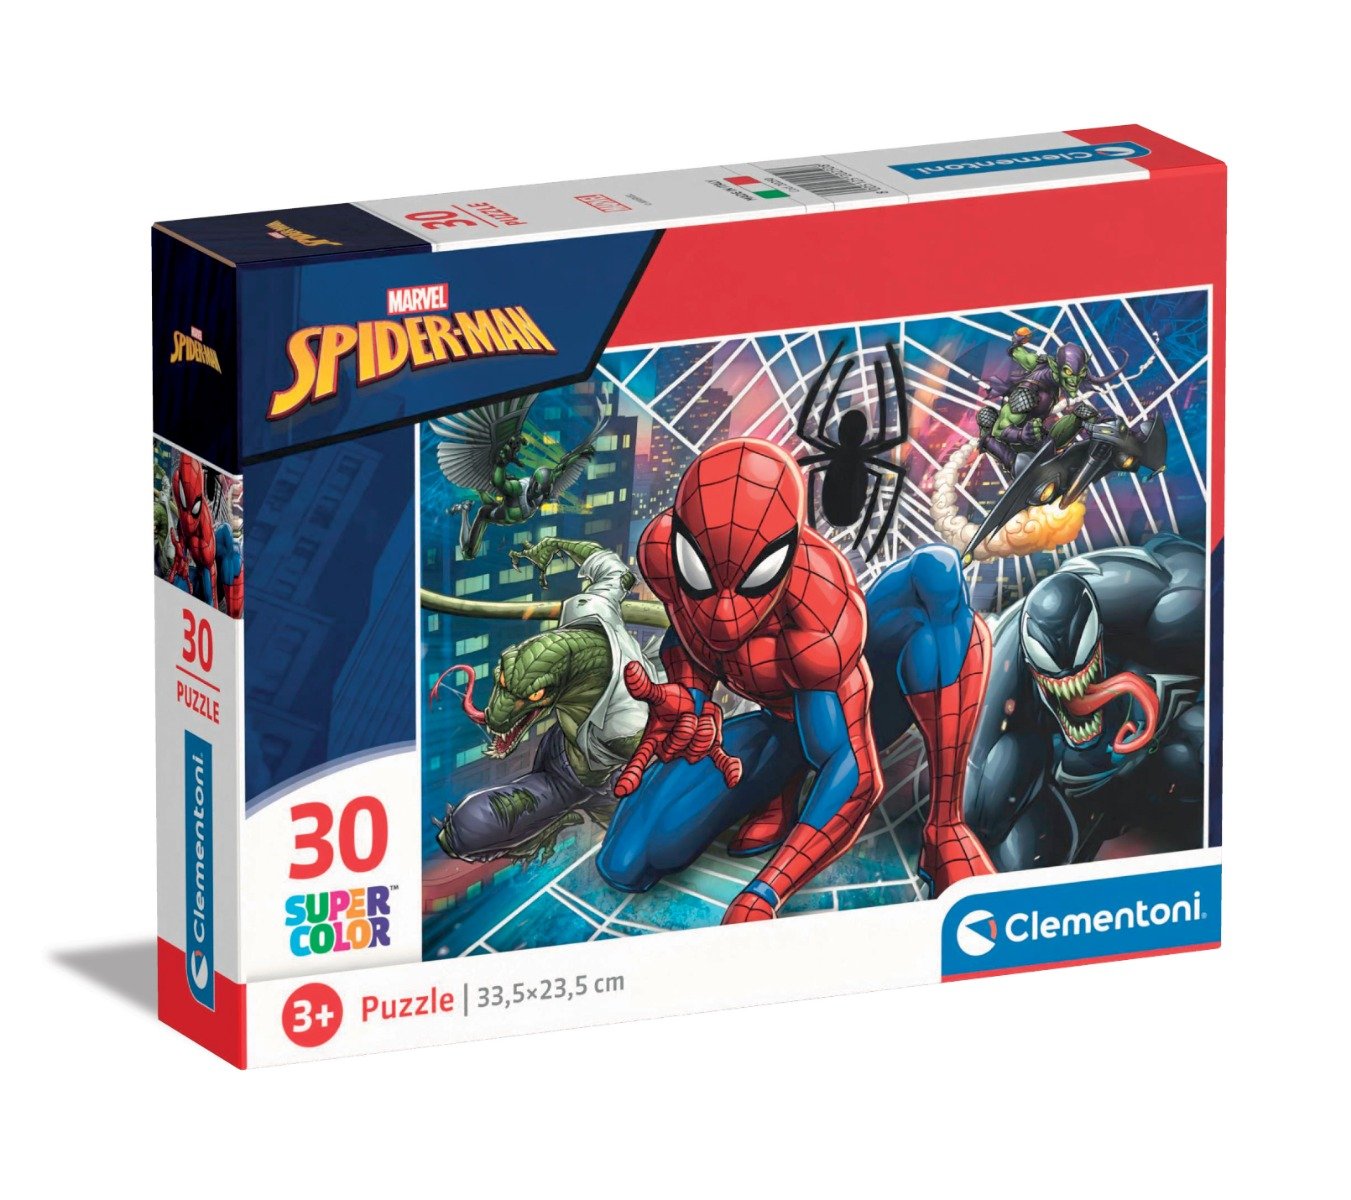 Poze Puzzle Clementoni Spiderman, 30 piese